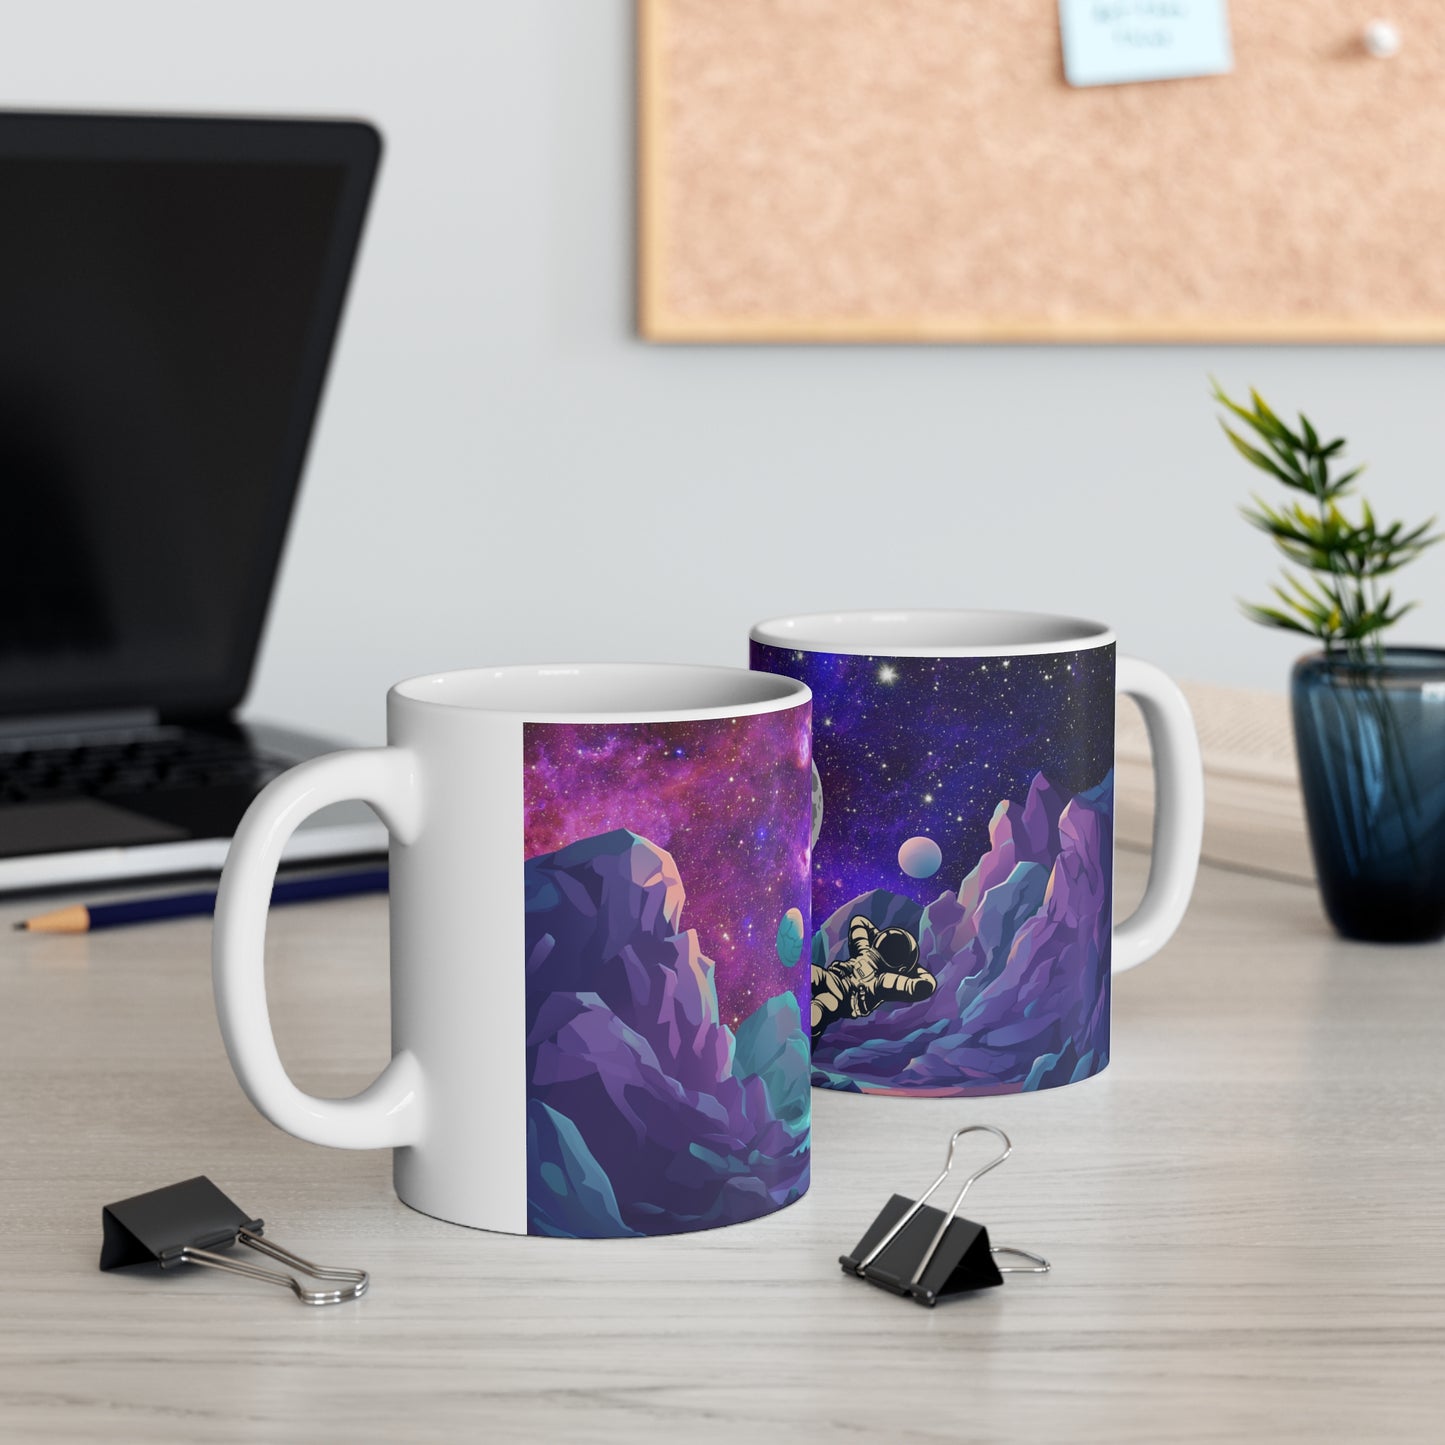 Coffee Mug Customized Graphic Purple Ceramic Mug 11oz